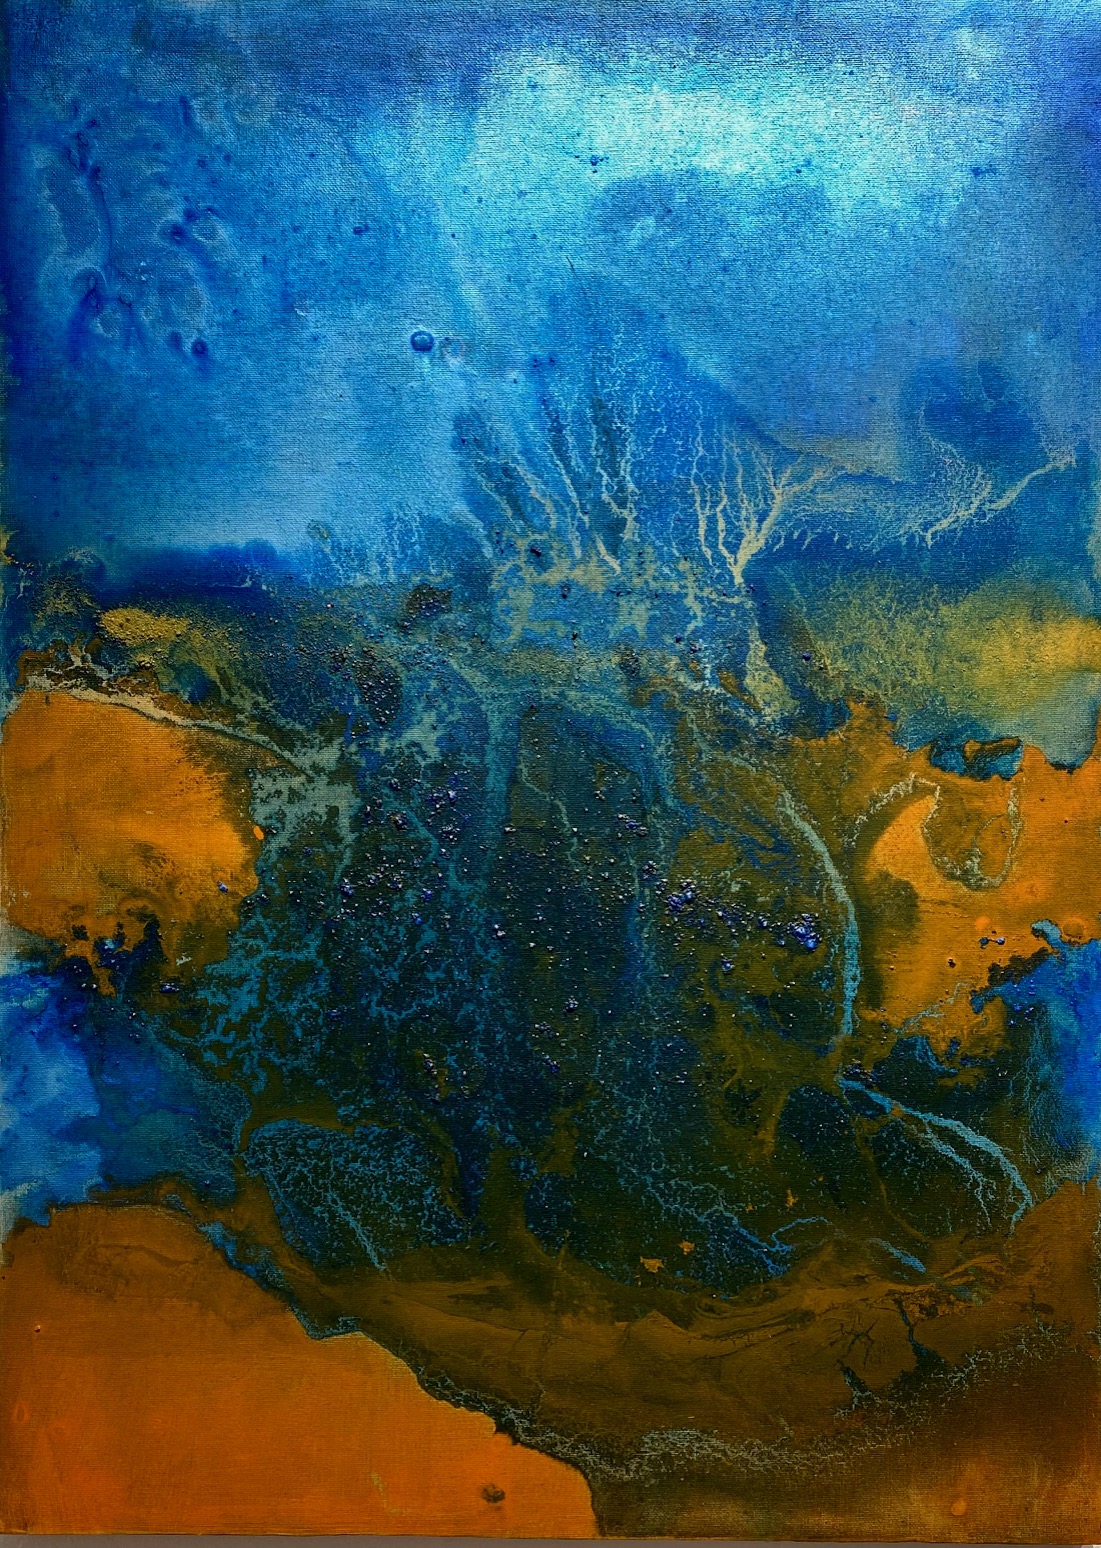 Gemälde mit Luftbild mit Darstellung eines Küstenstreifens in Ocker und Blau.